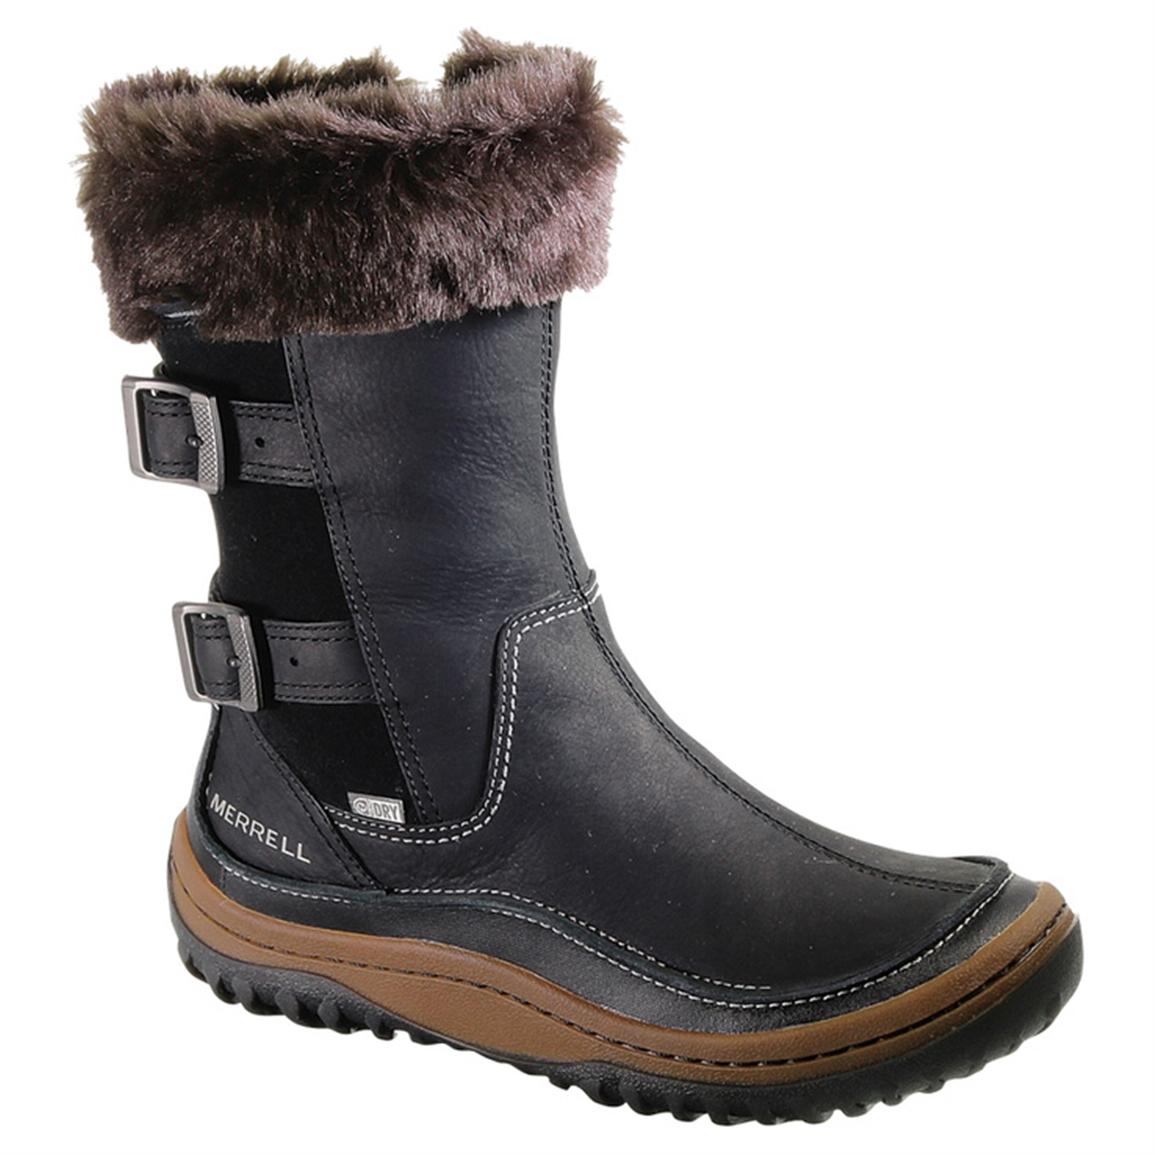 Warmest Winter Boots Canada | NATIONAL SHERIFFS' ASSOCIATION